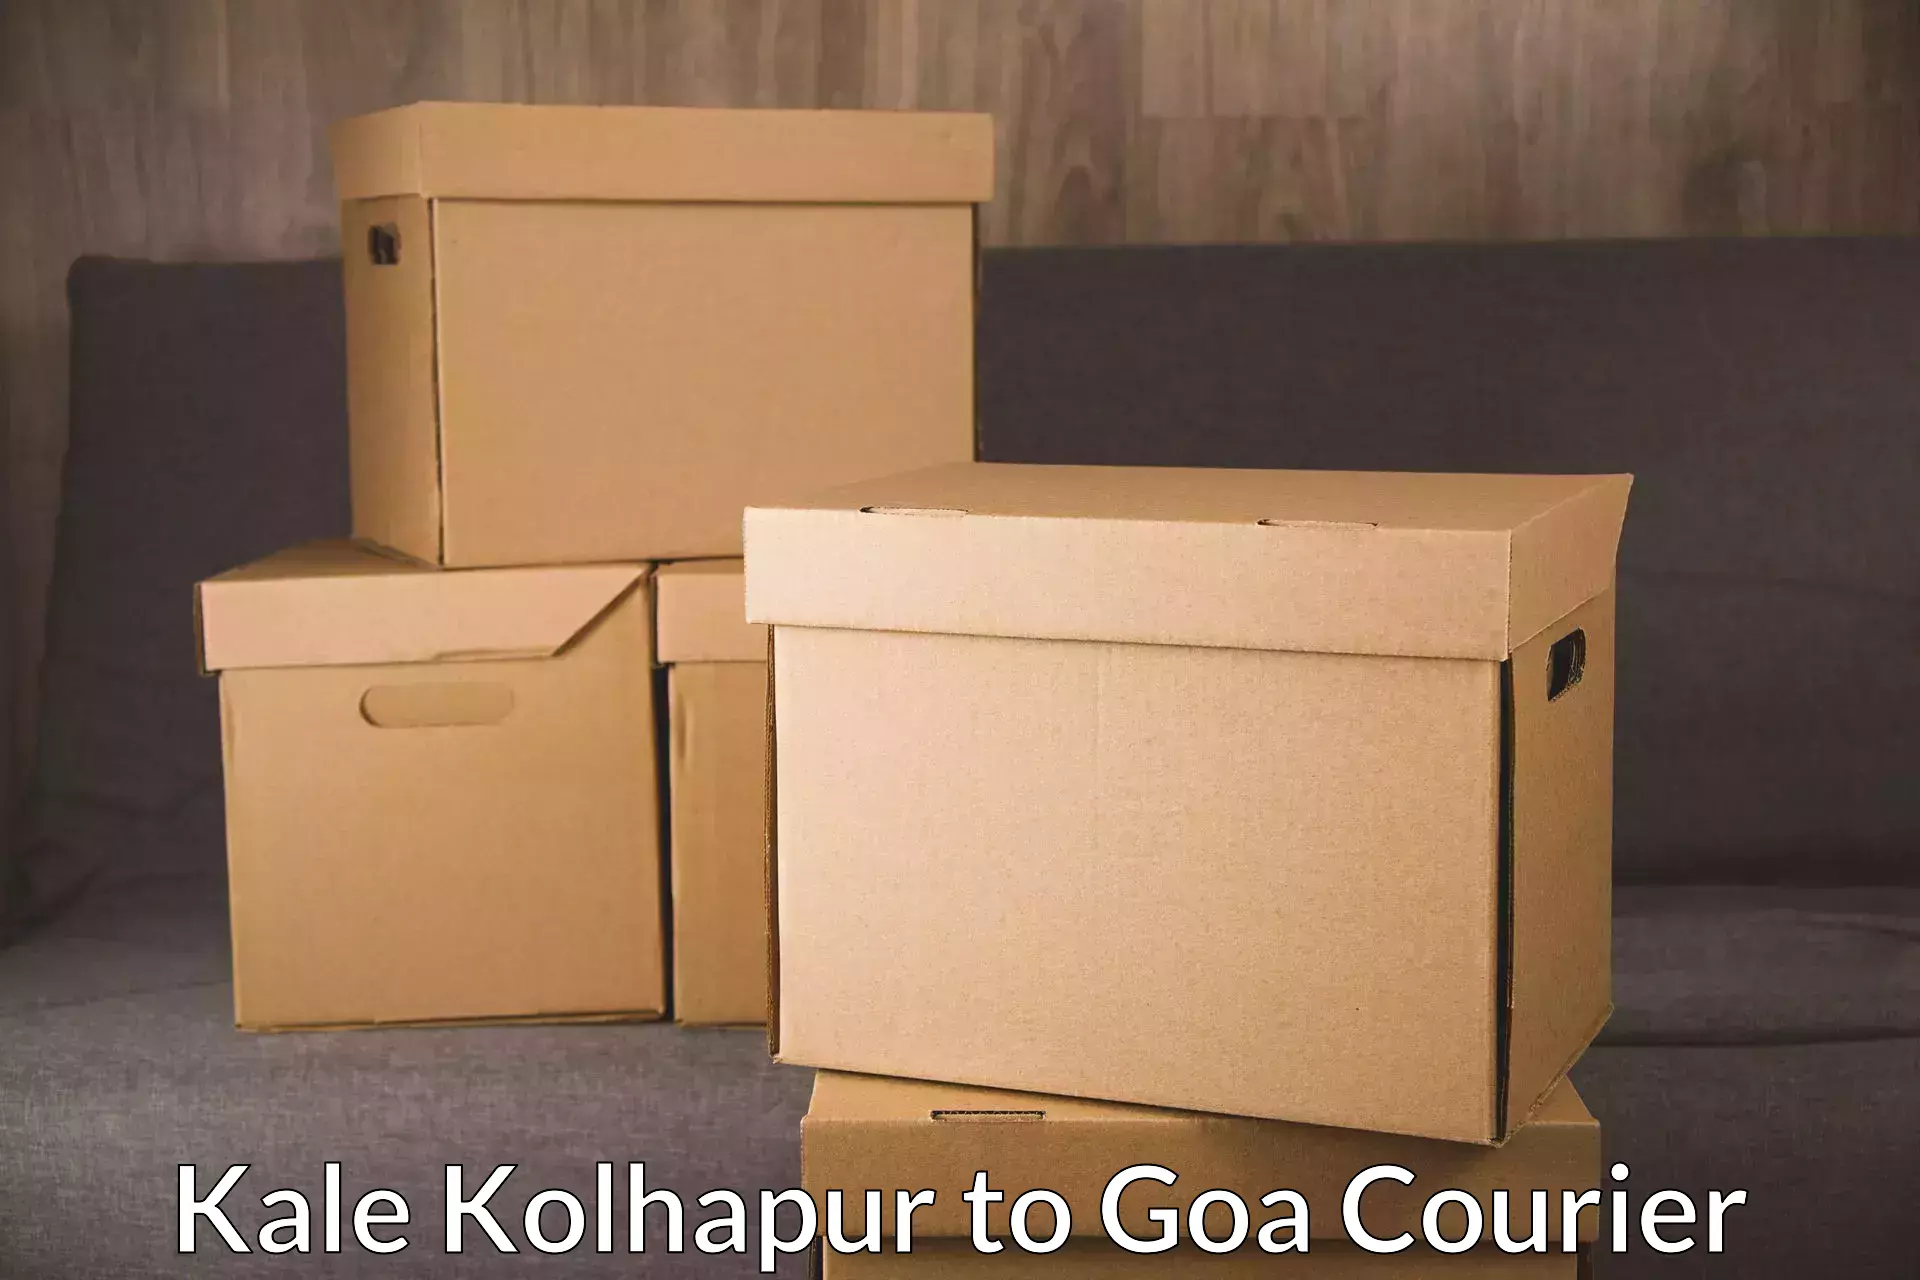 Express postal services Kale Kolhapur to NIT Goa